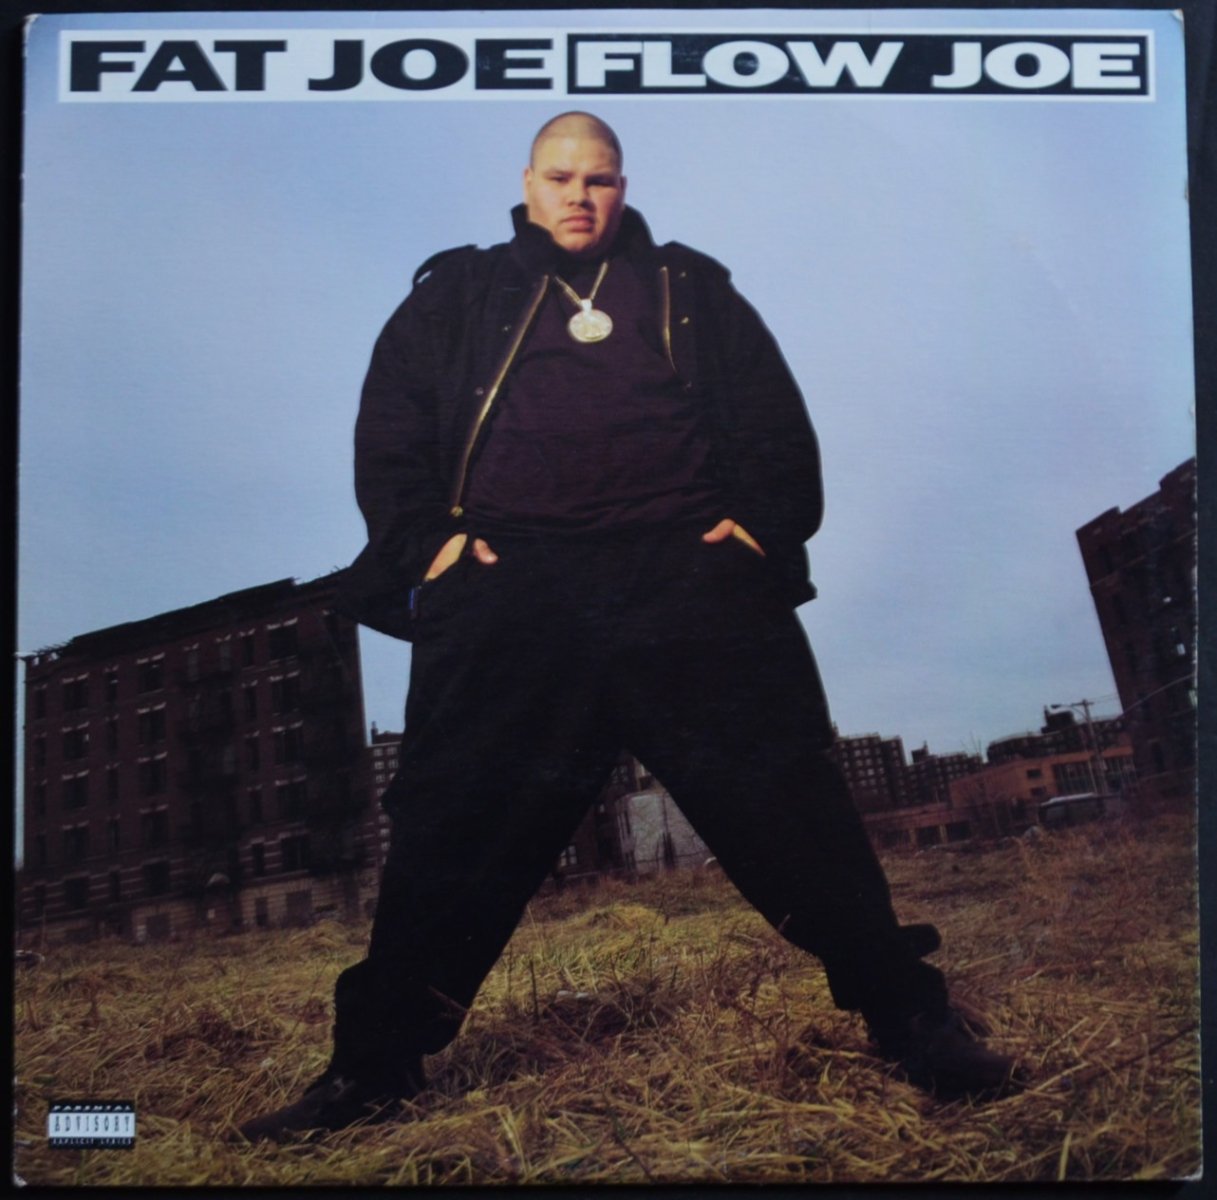 FAT JOE ‎/ FLOW JOE (PROD BY DIAMOND D) / LIVIN' FAT (PROD BY LORD FINESSE) (12